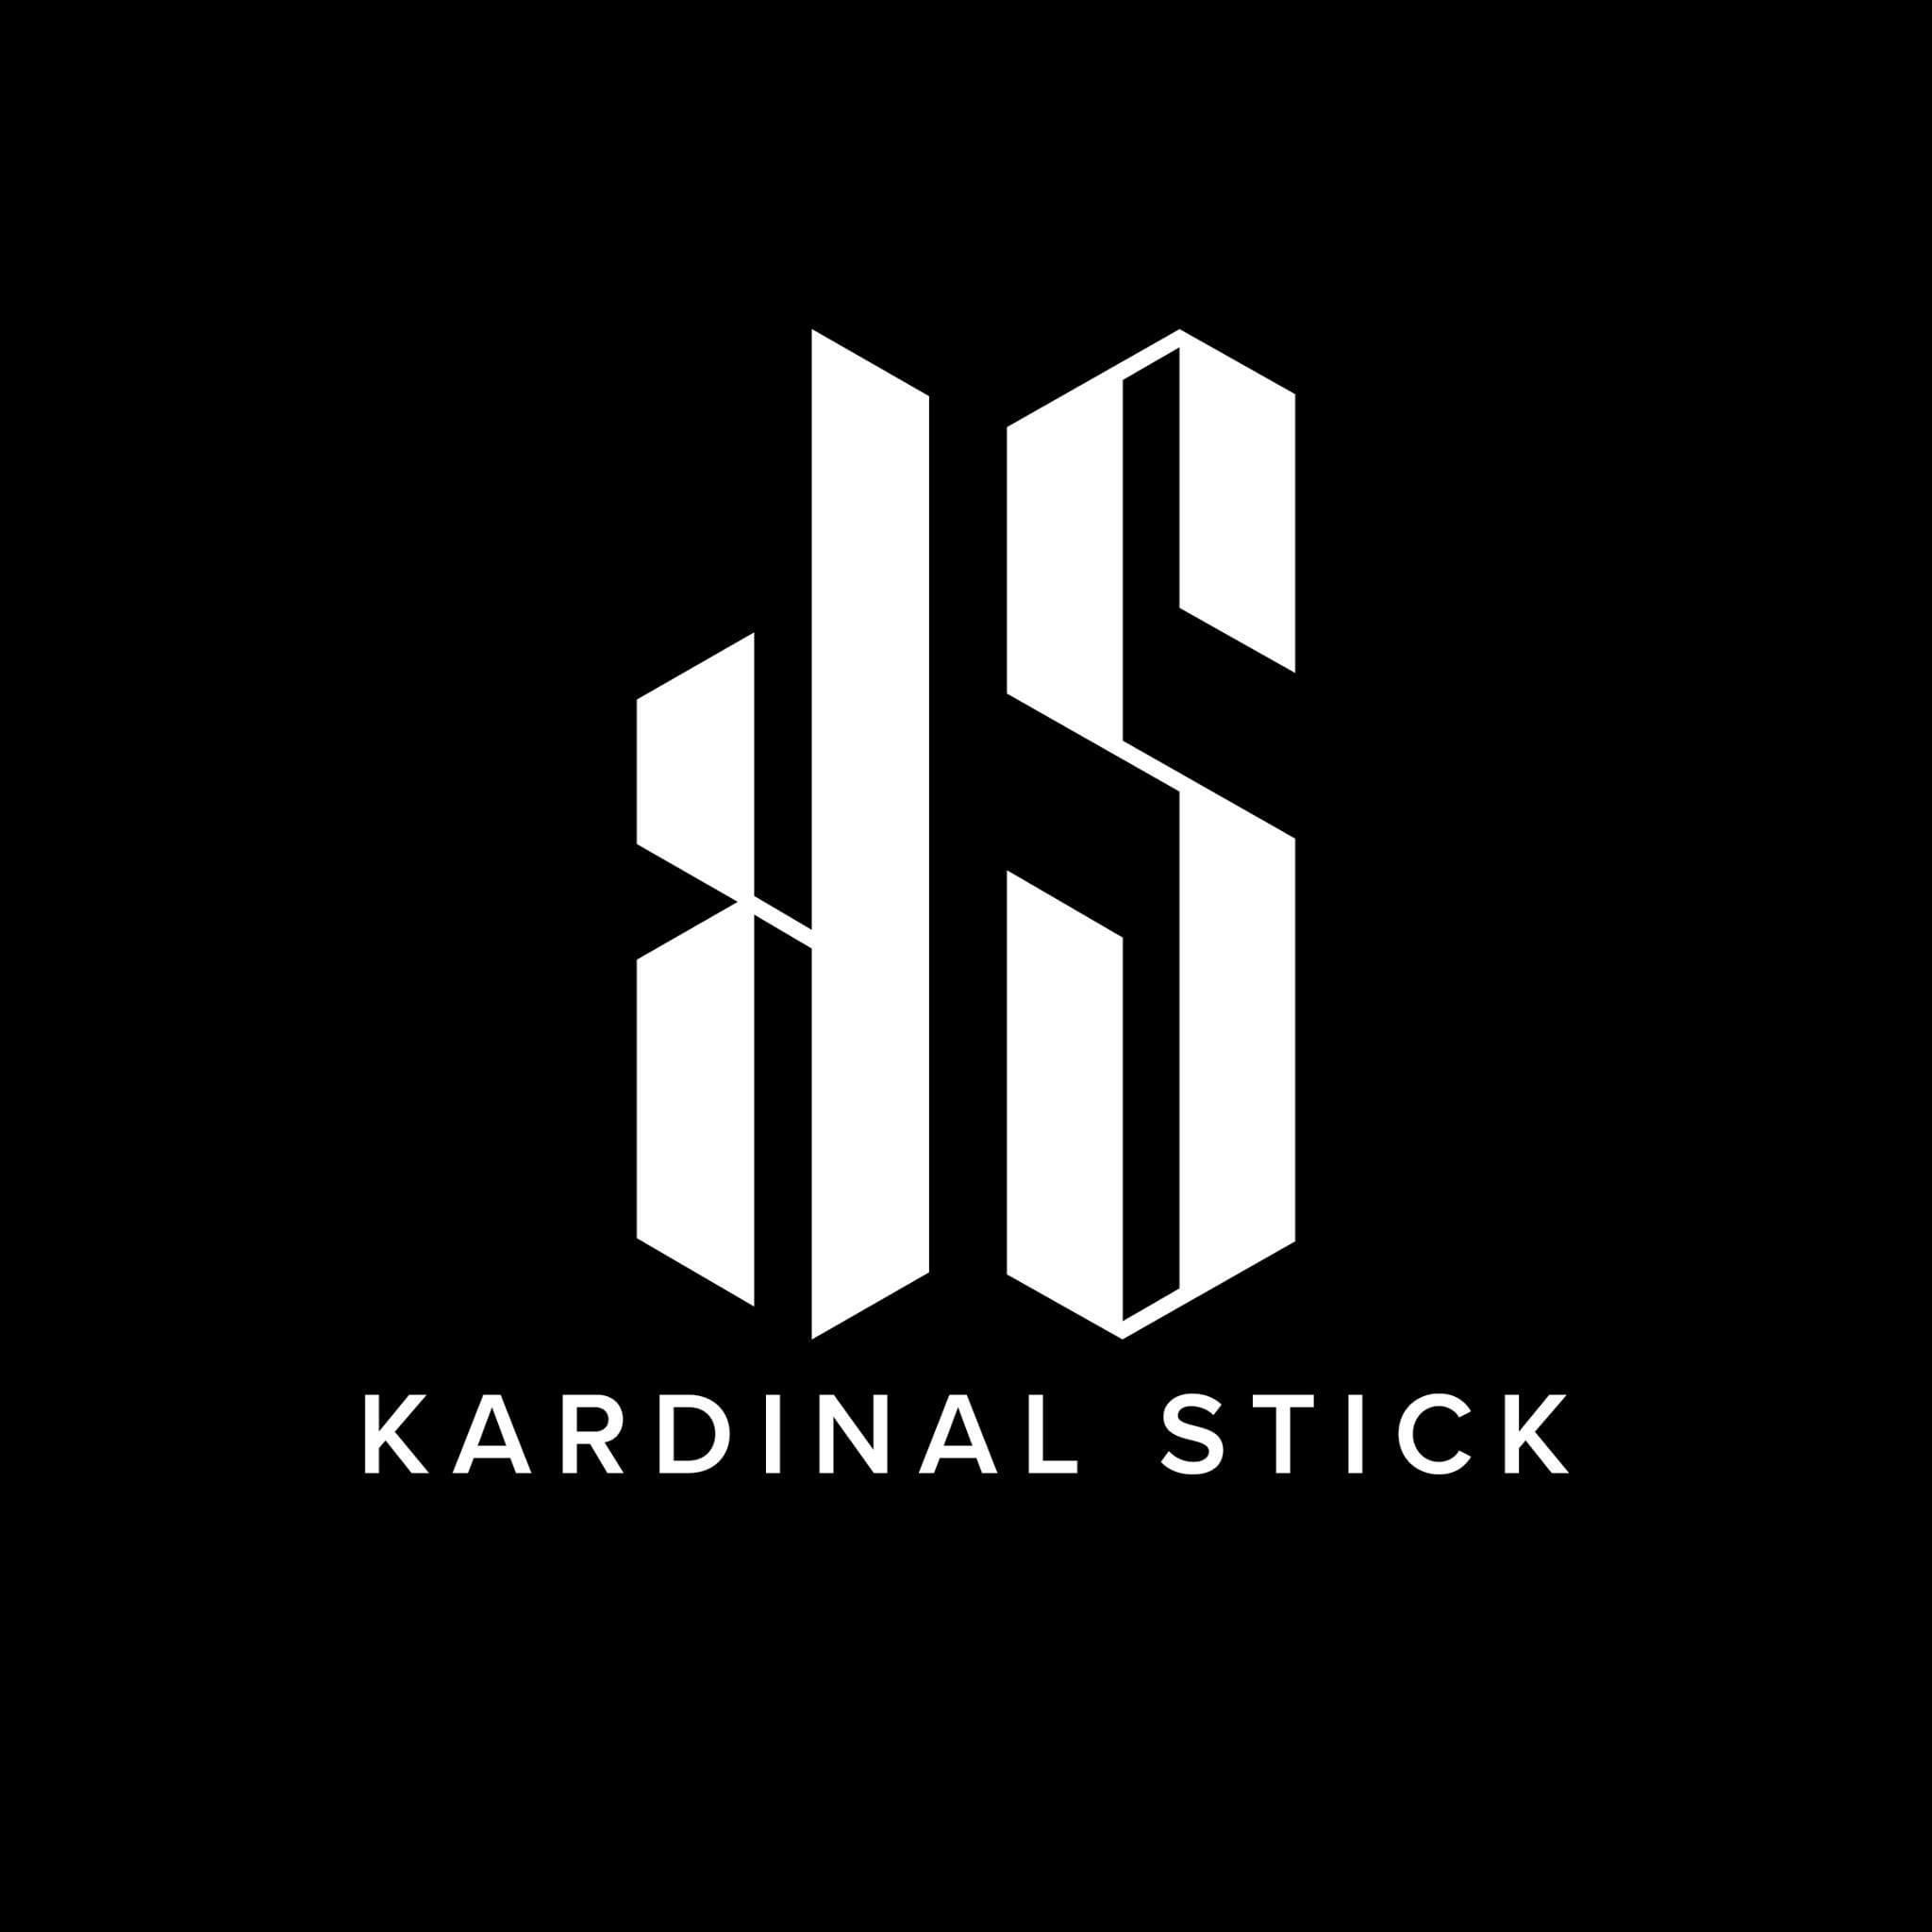 KSPODS.COM Kardinal Stick – KS KARDINAL STICK และ KS POD อุปกรณ์เลิกบุหรี่ เจ้าใหญ่ในไทย ส่งด่วนทั่วกรุงเทพ ราคาถูก พร้อมรับสมัครตัวแทนจำหน่าย